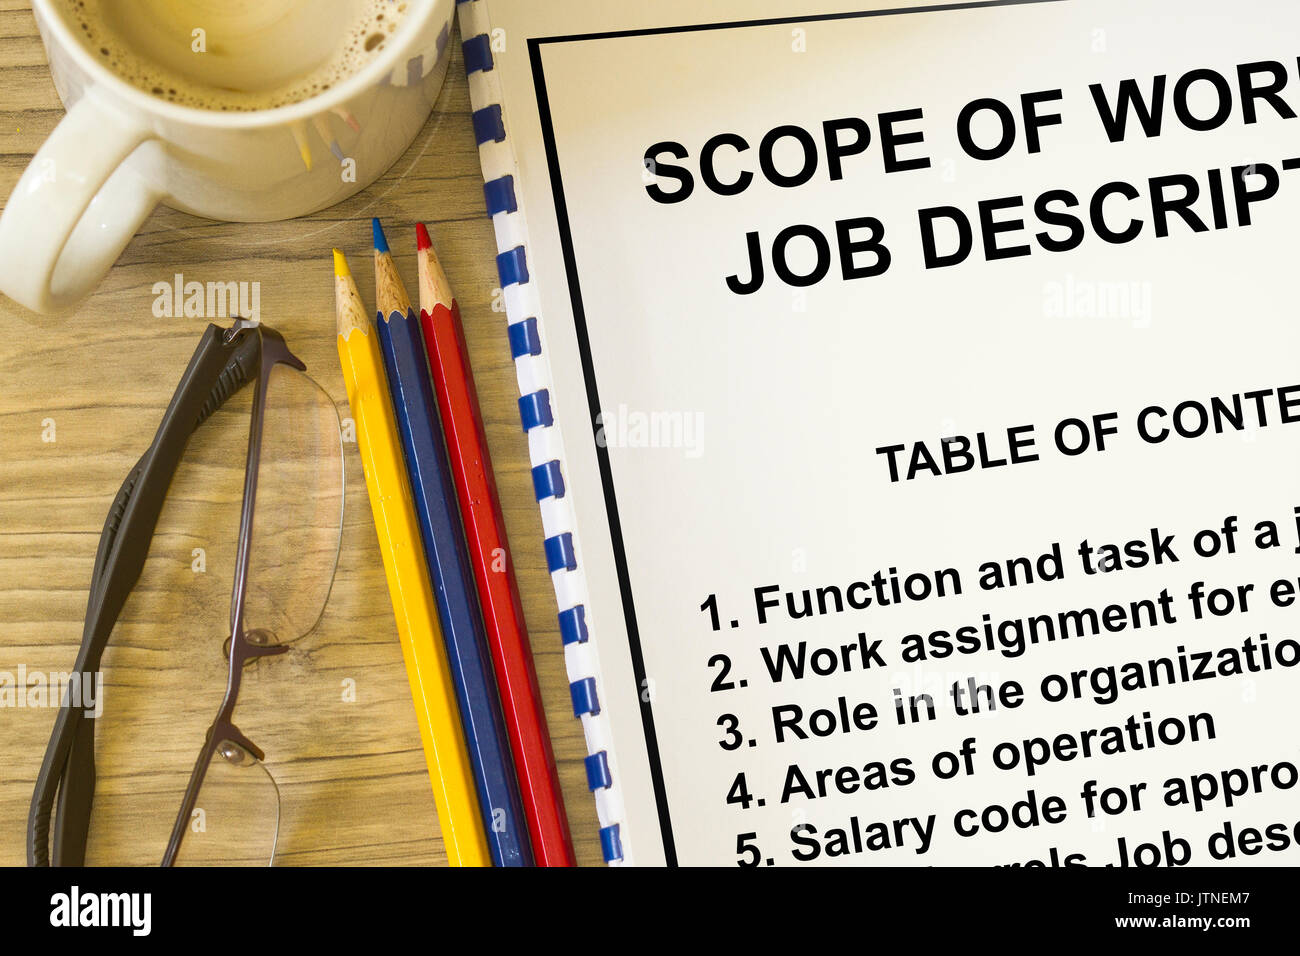 Descrizione del lavoro e rscope del lavoro - molti impieghi nel settore HR Foto Stock